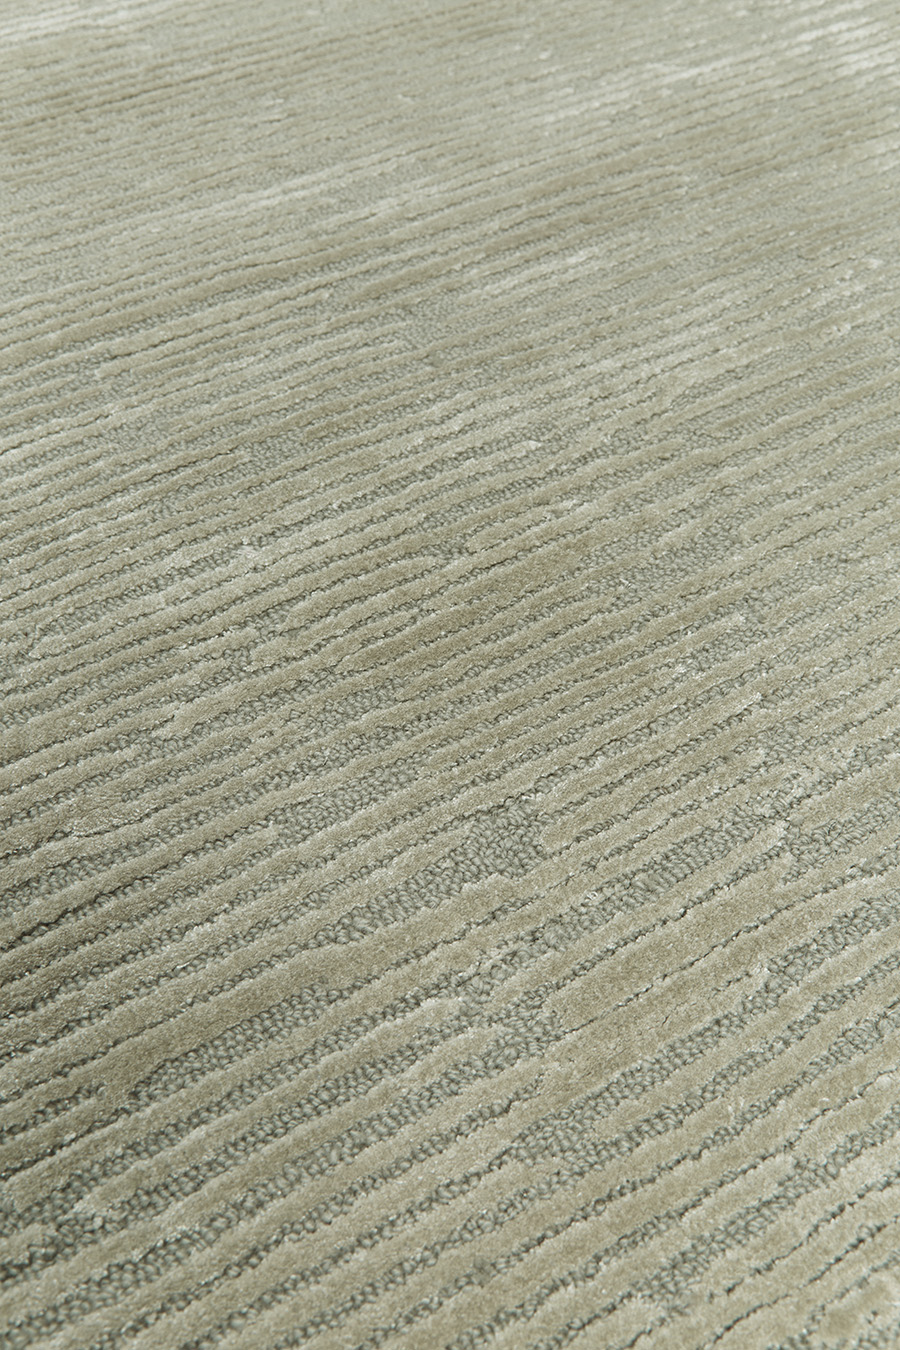 designer rugs textures Rhodium iron oh lr close up